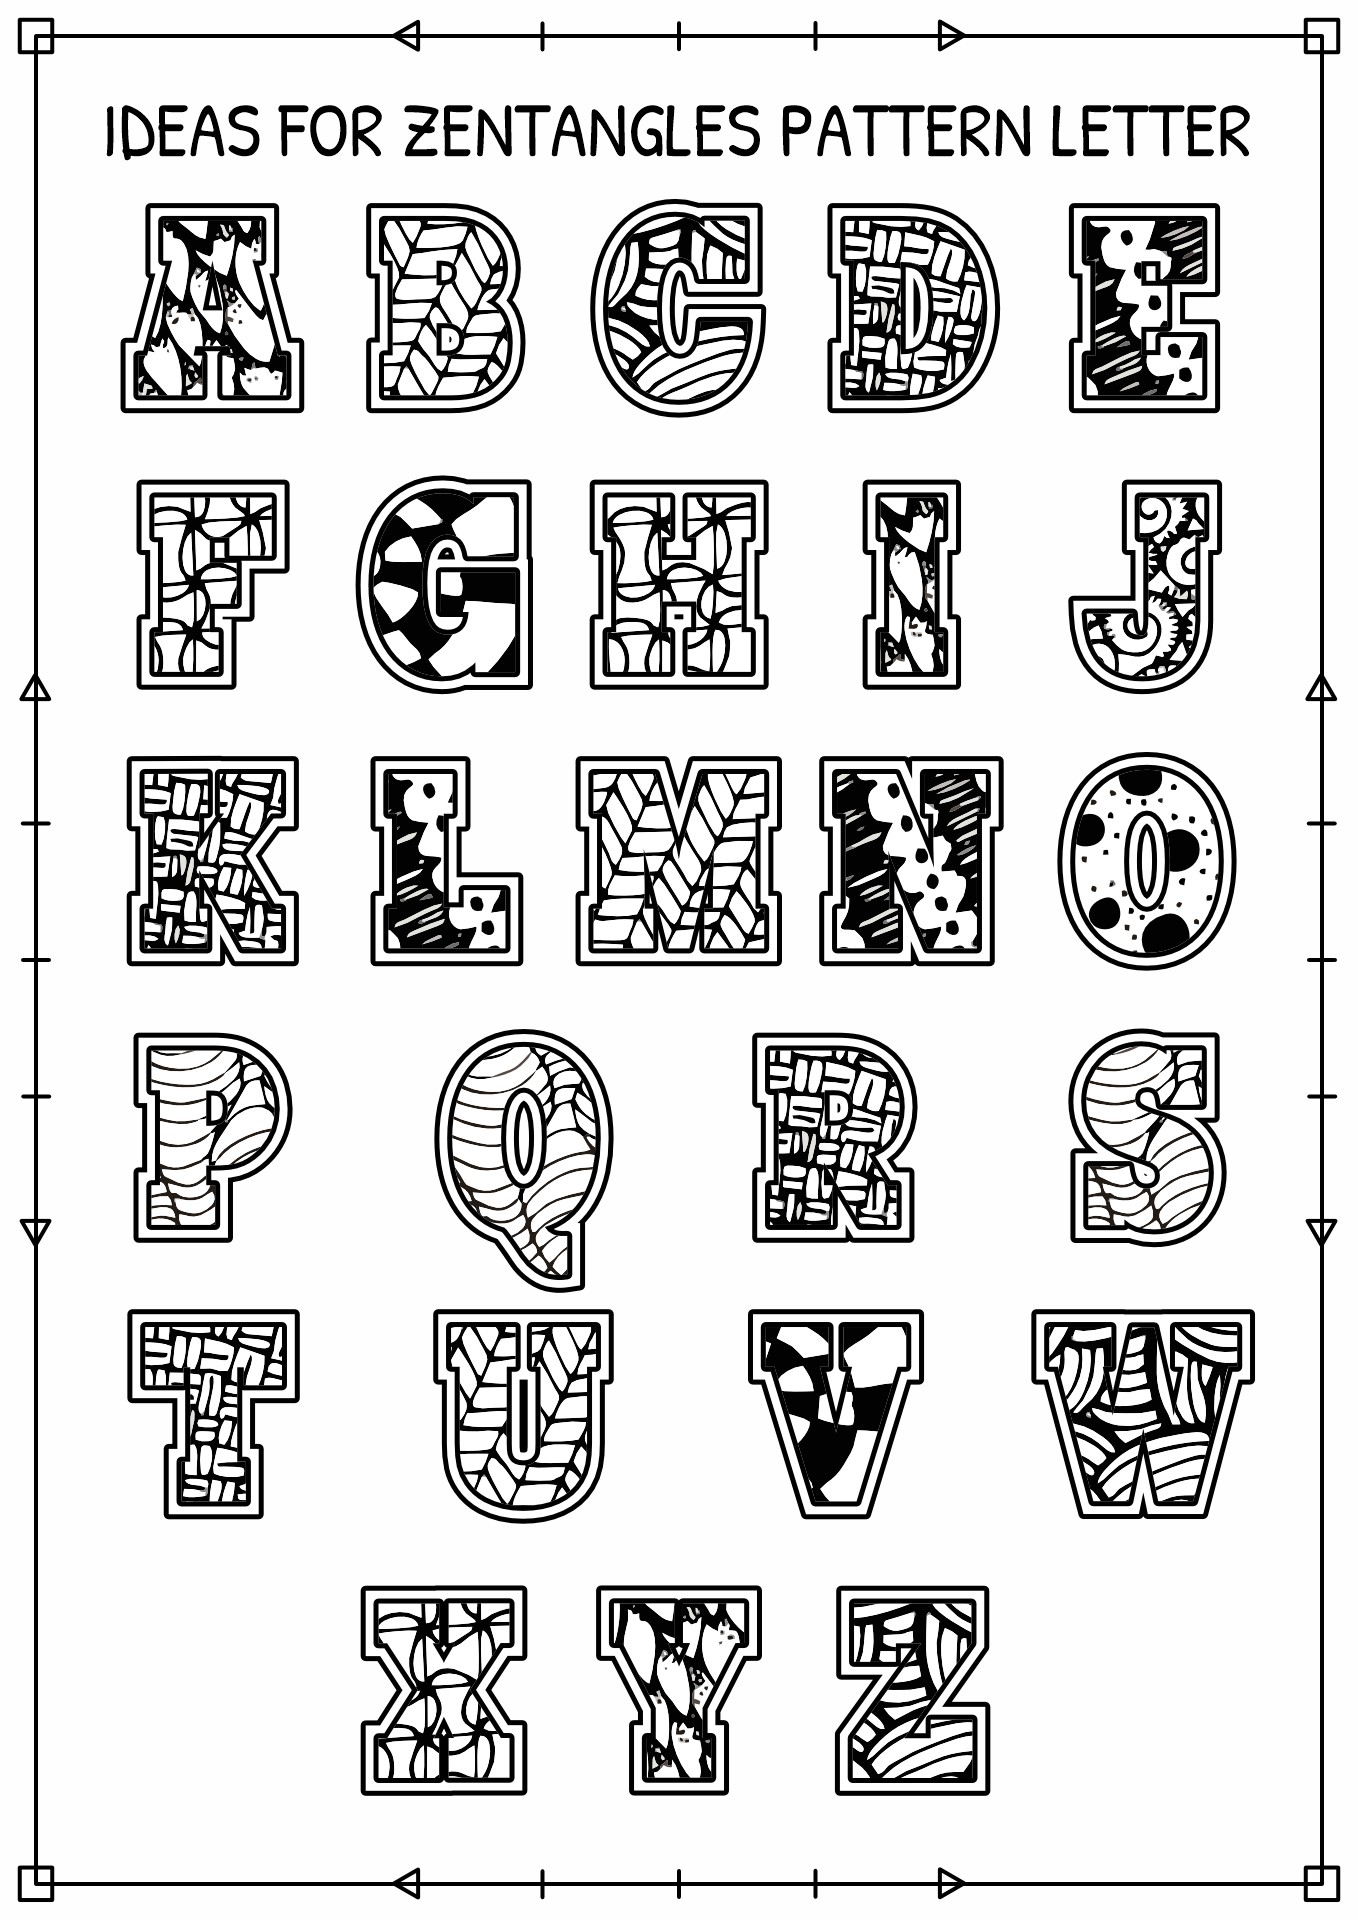 Zentangle Letter Art Pattern Ideas